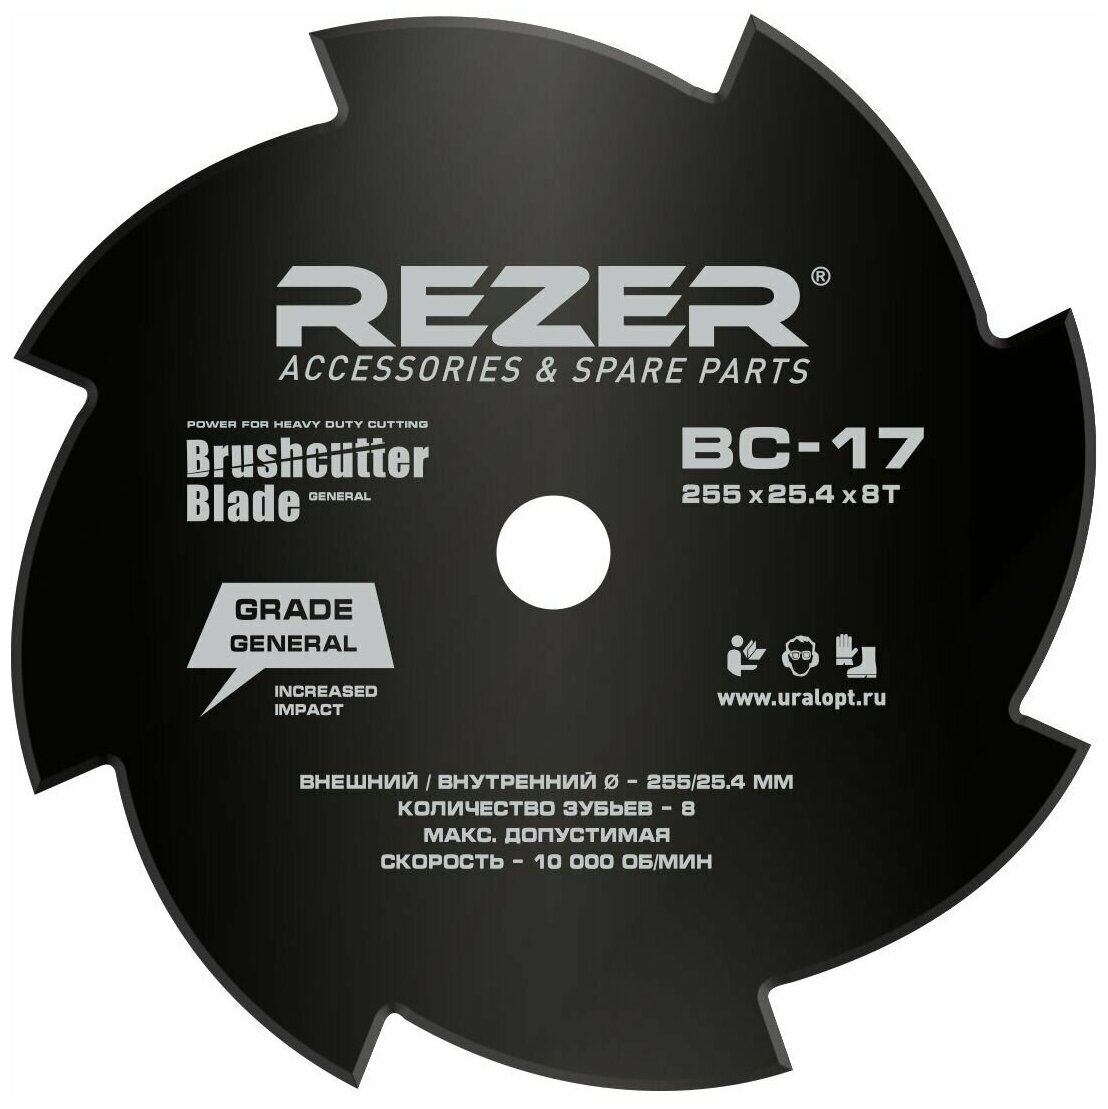 Нож Rezer BC-17